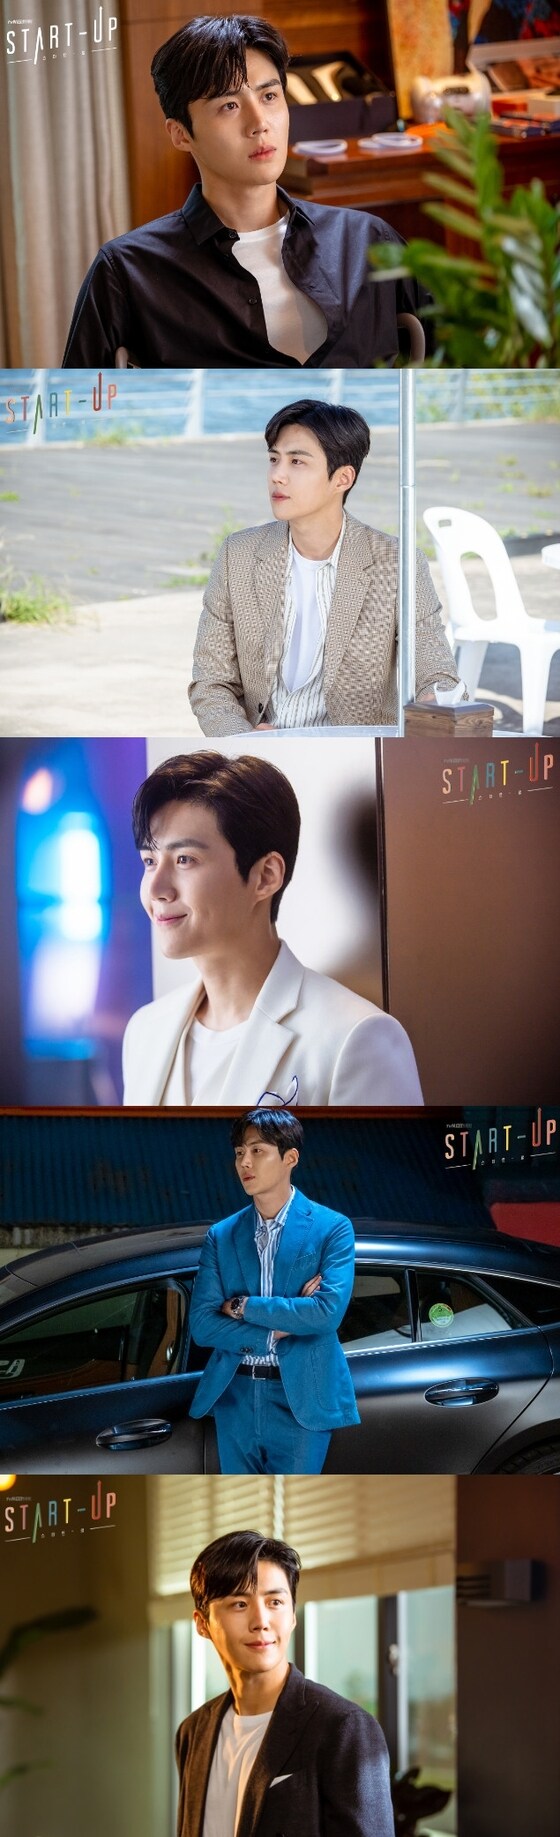 김선호/tvN 스타트업 홈페이지 © 뉴스1